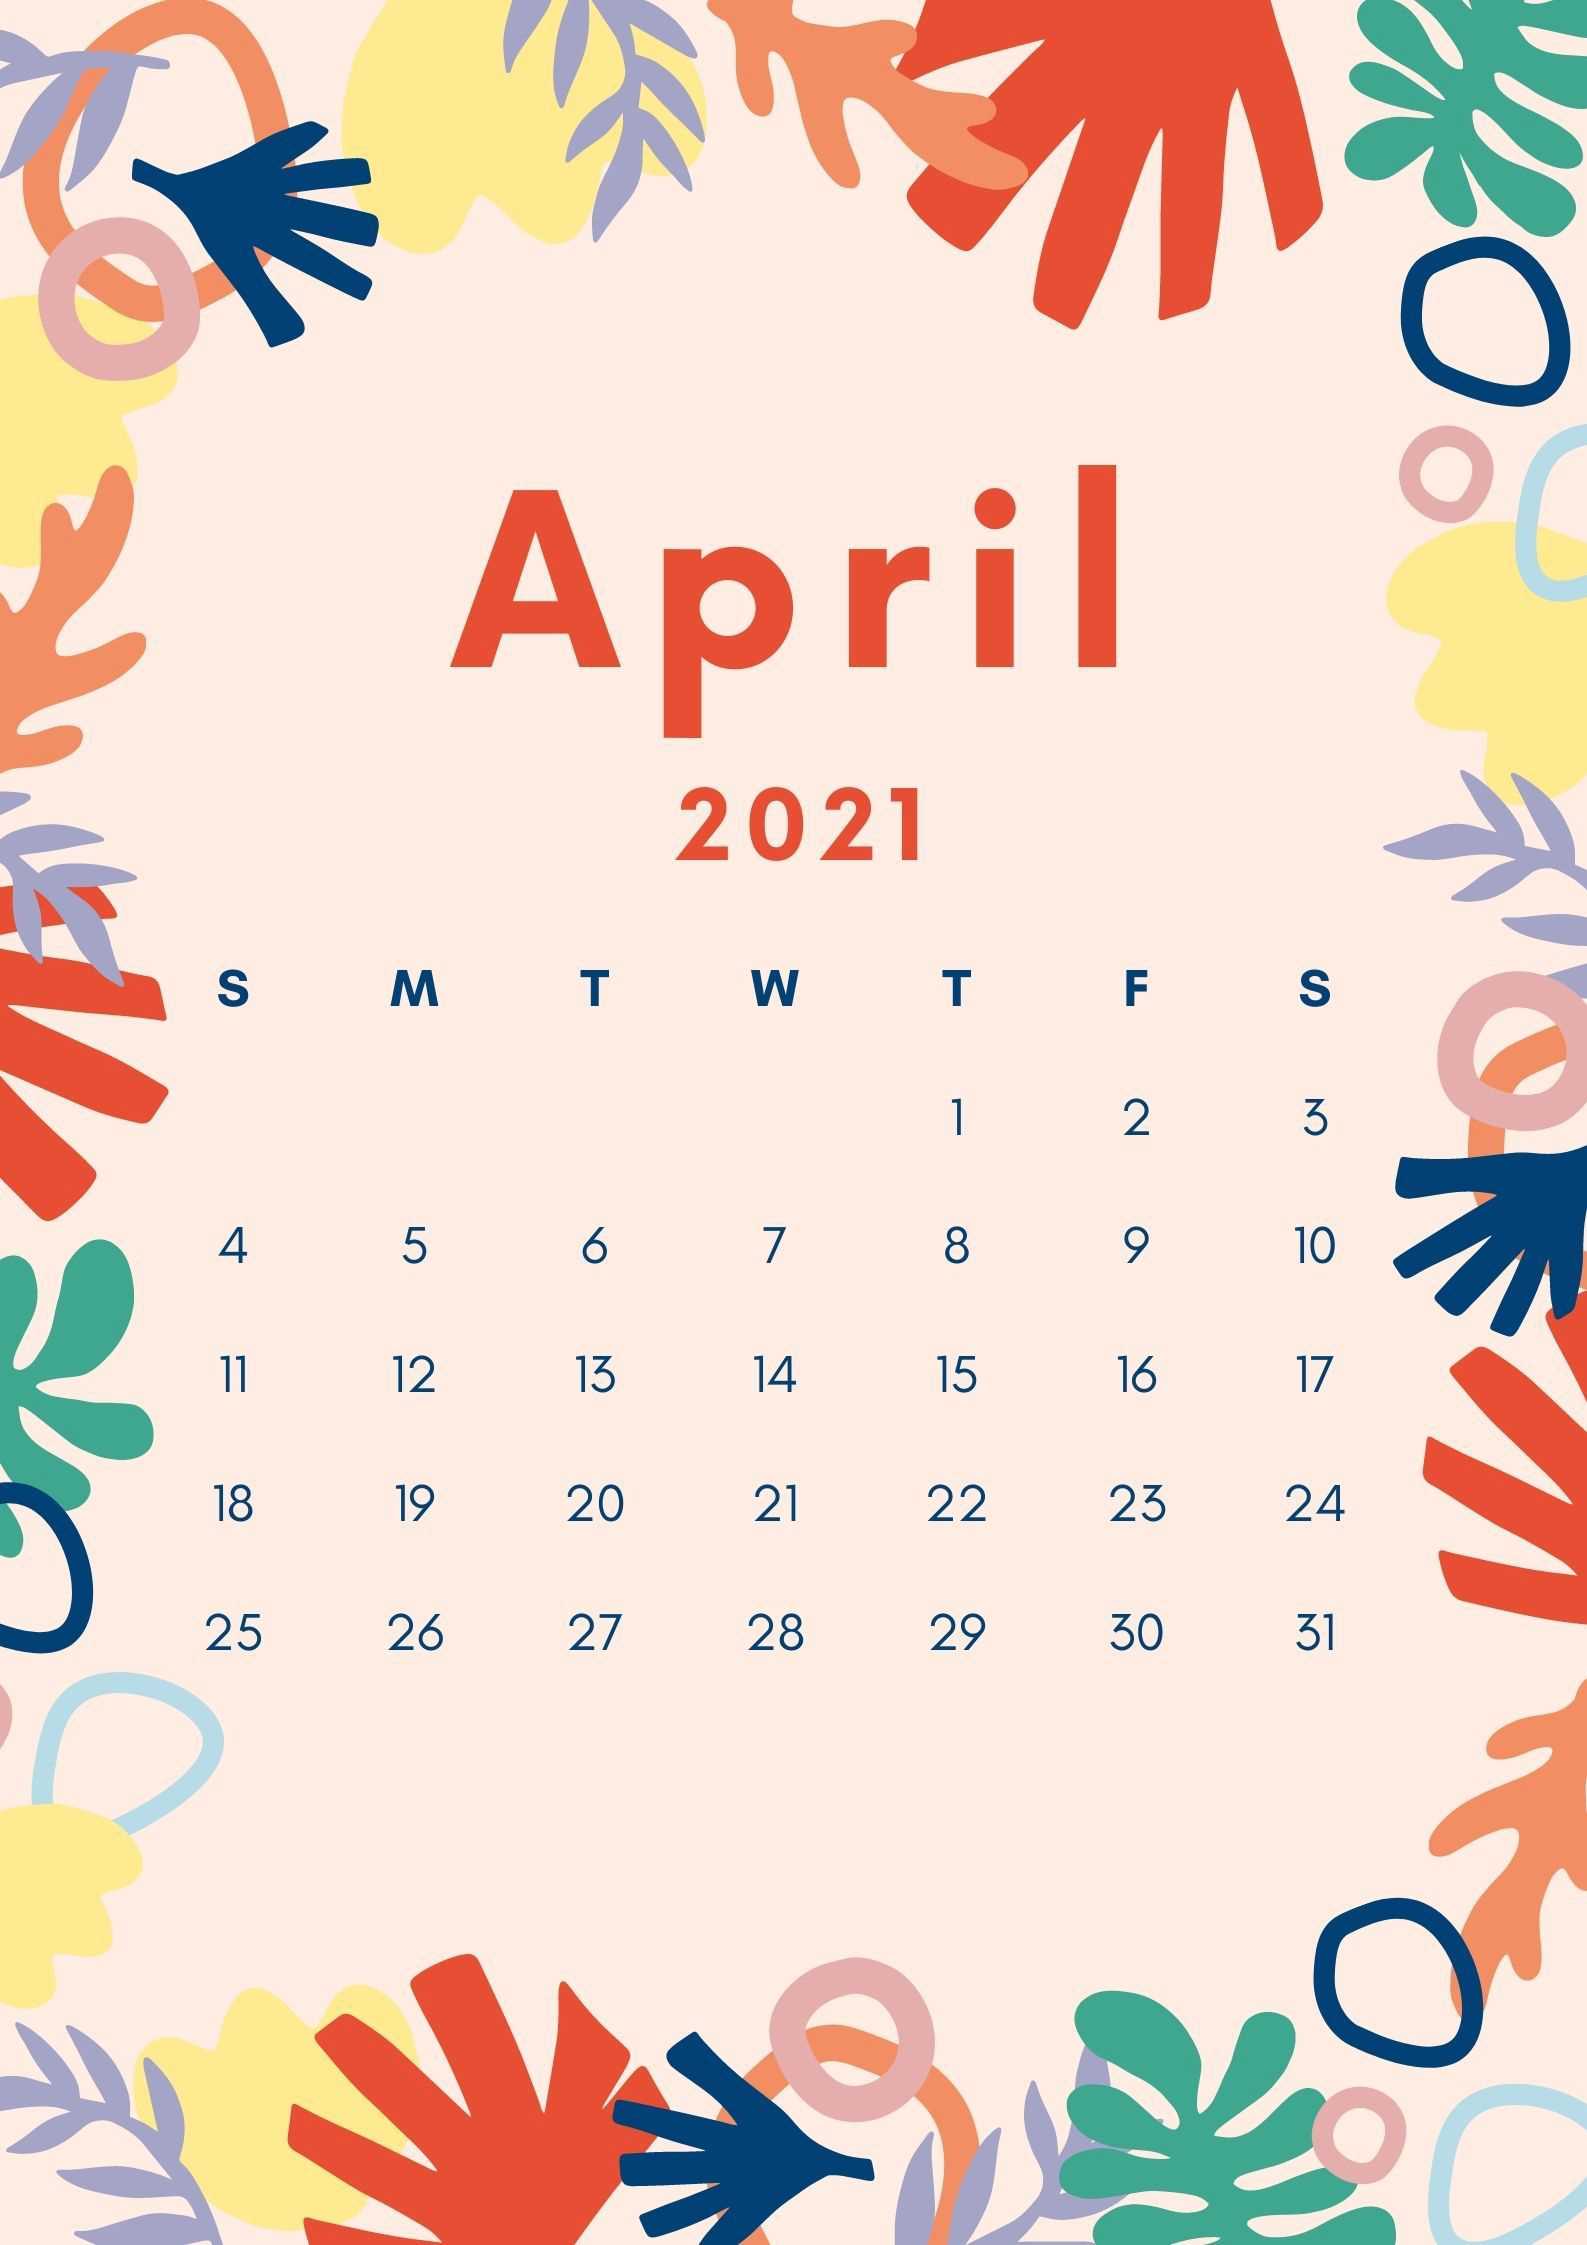 April Calendar Wallpaper 2021 1